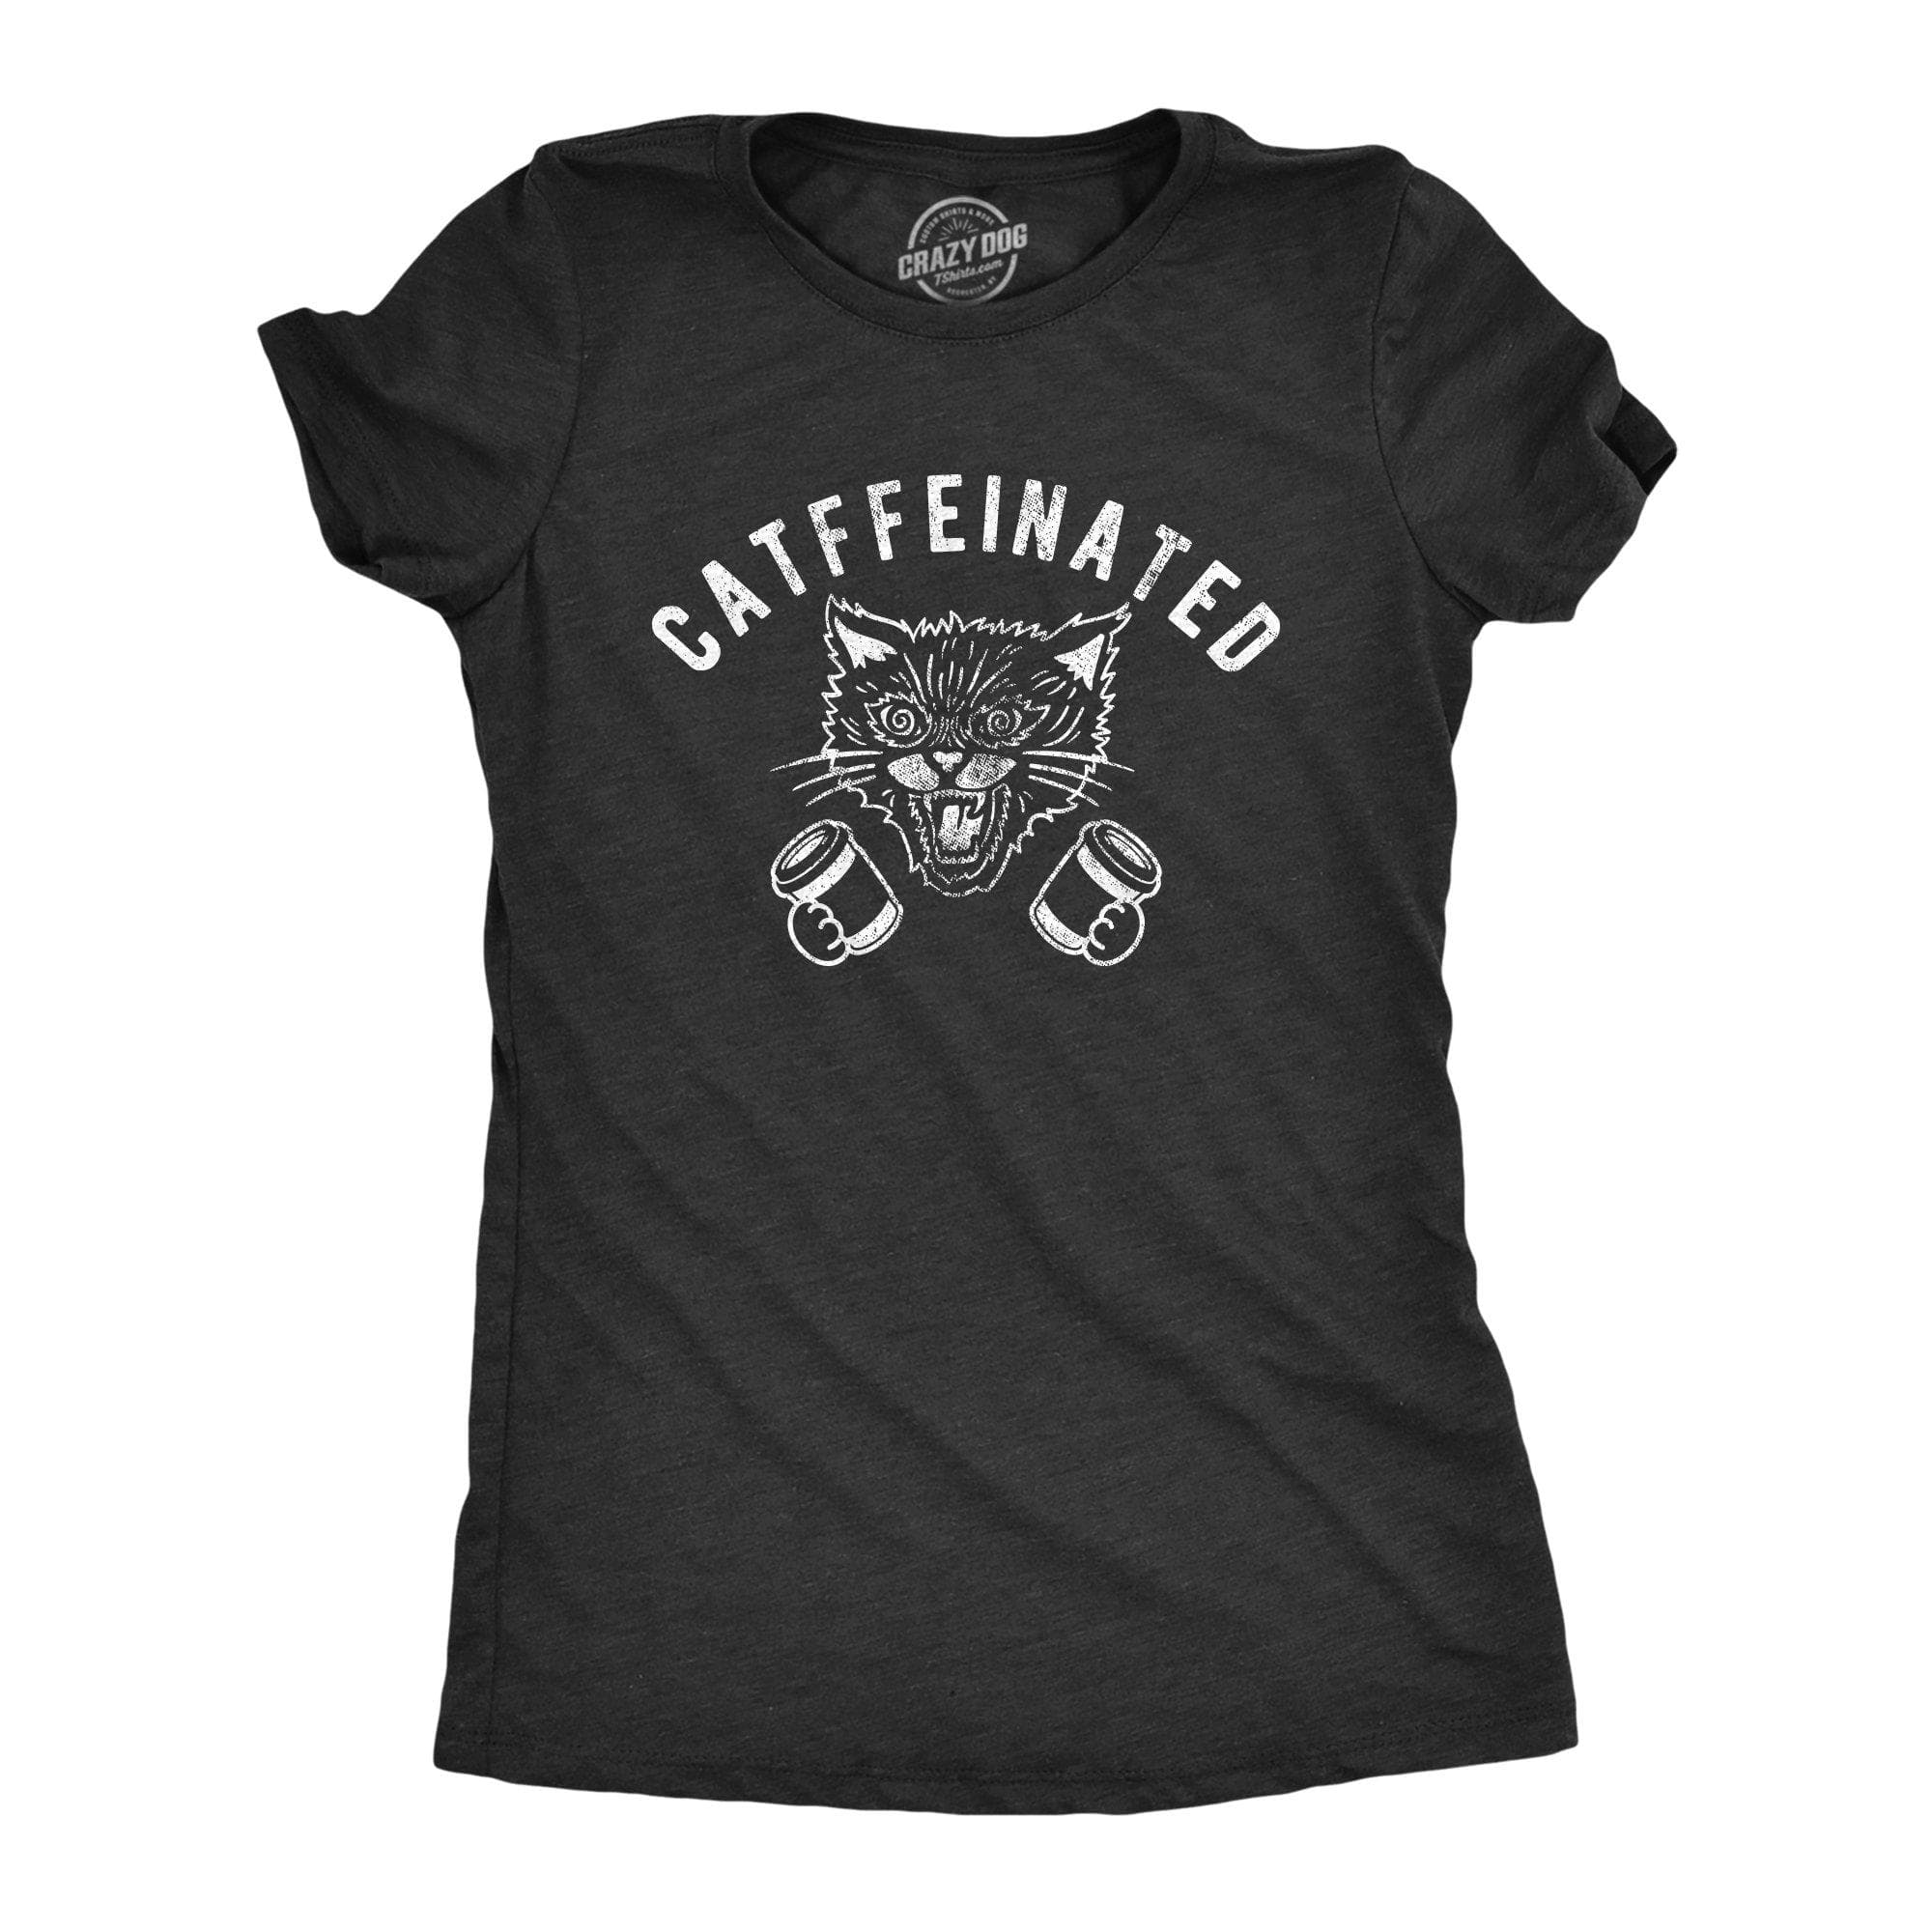 Catffeinated Women's Tshirt - Crazy Dog T-Shirts